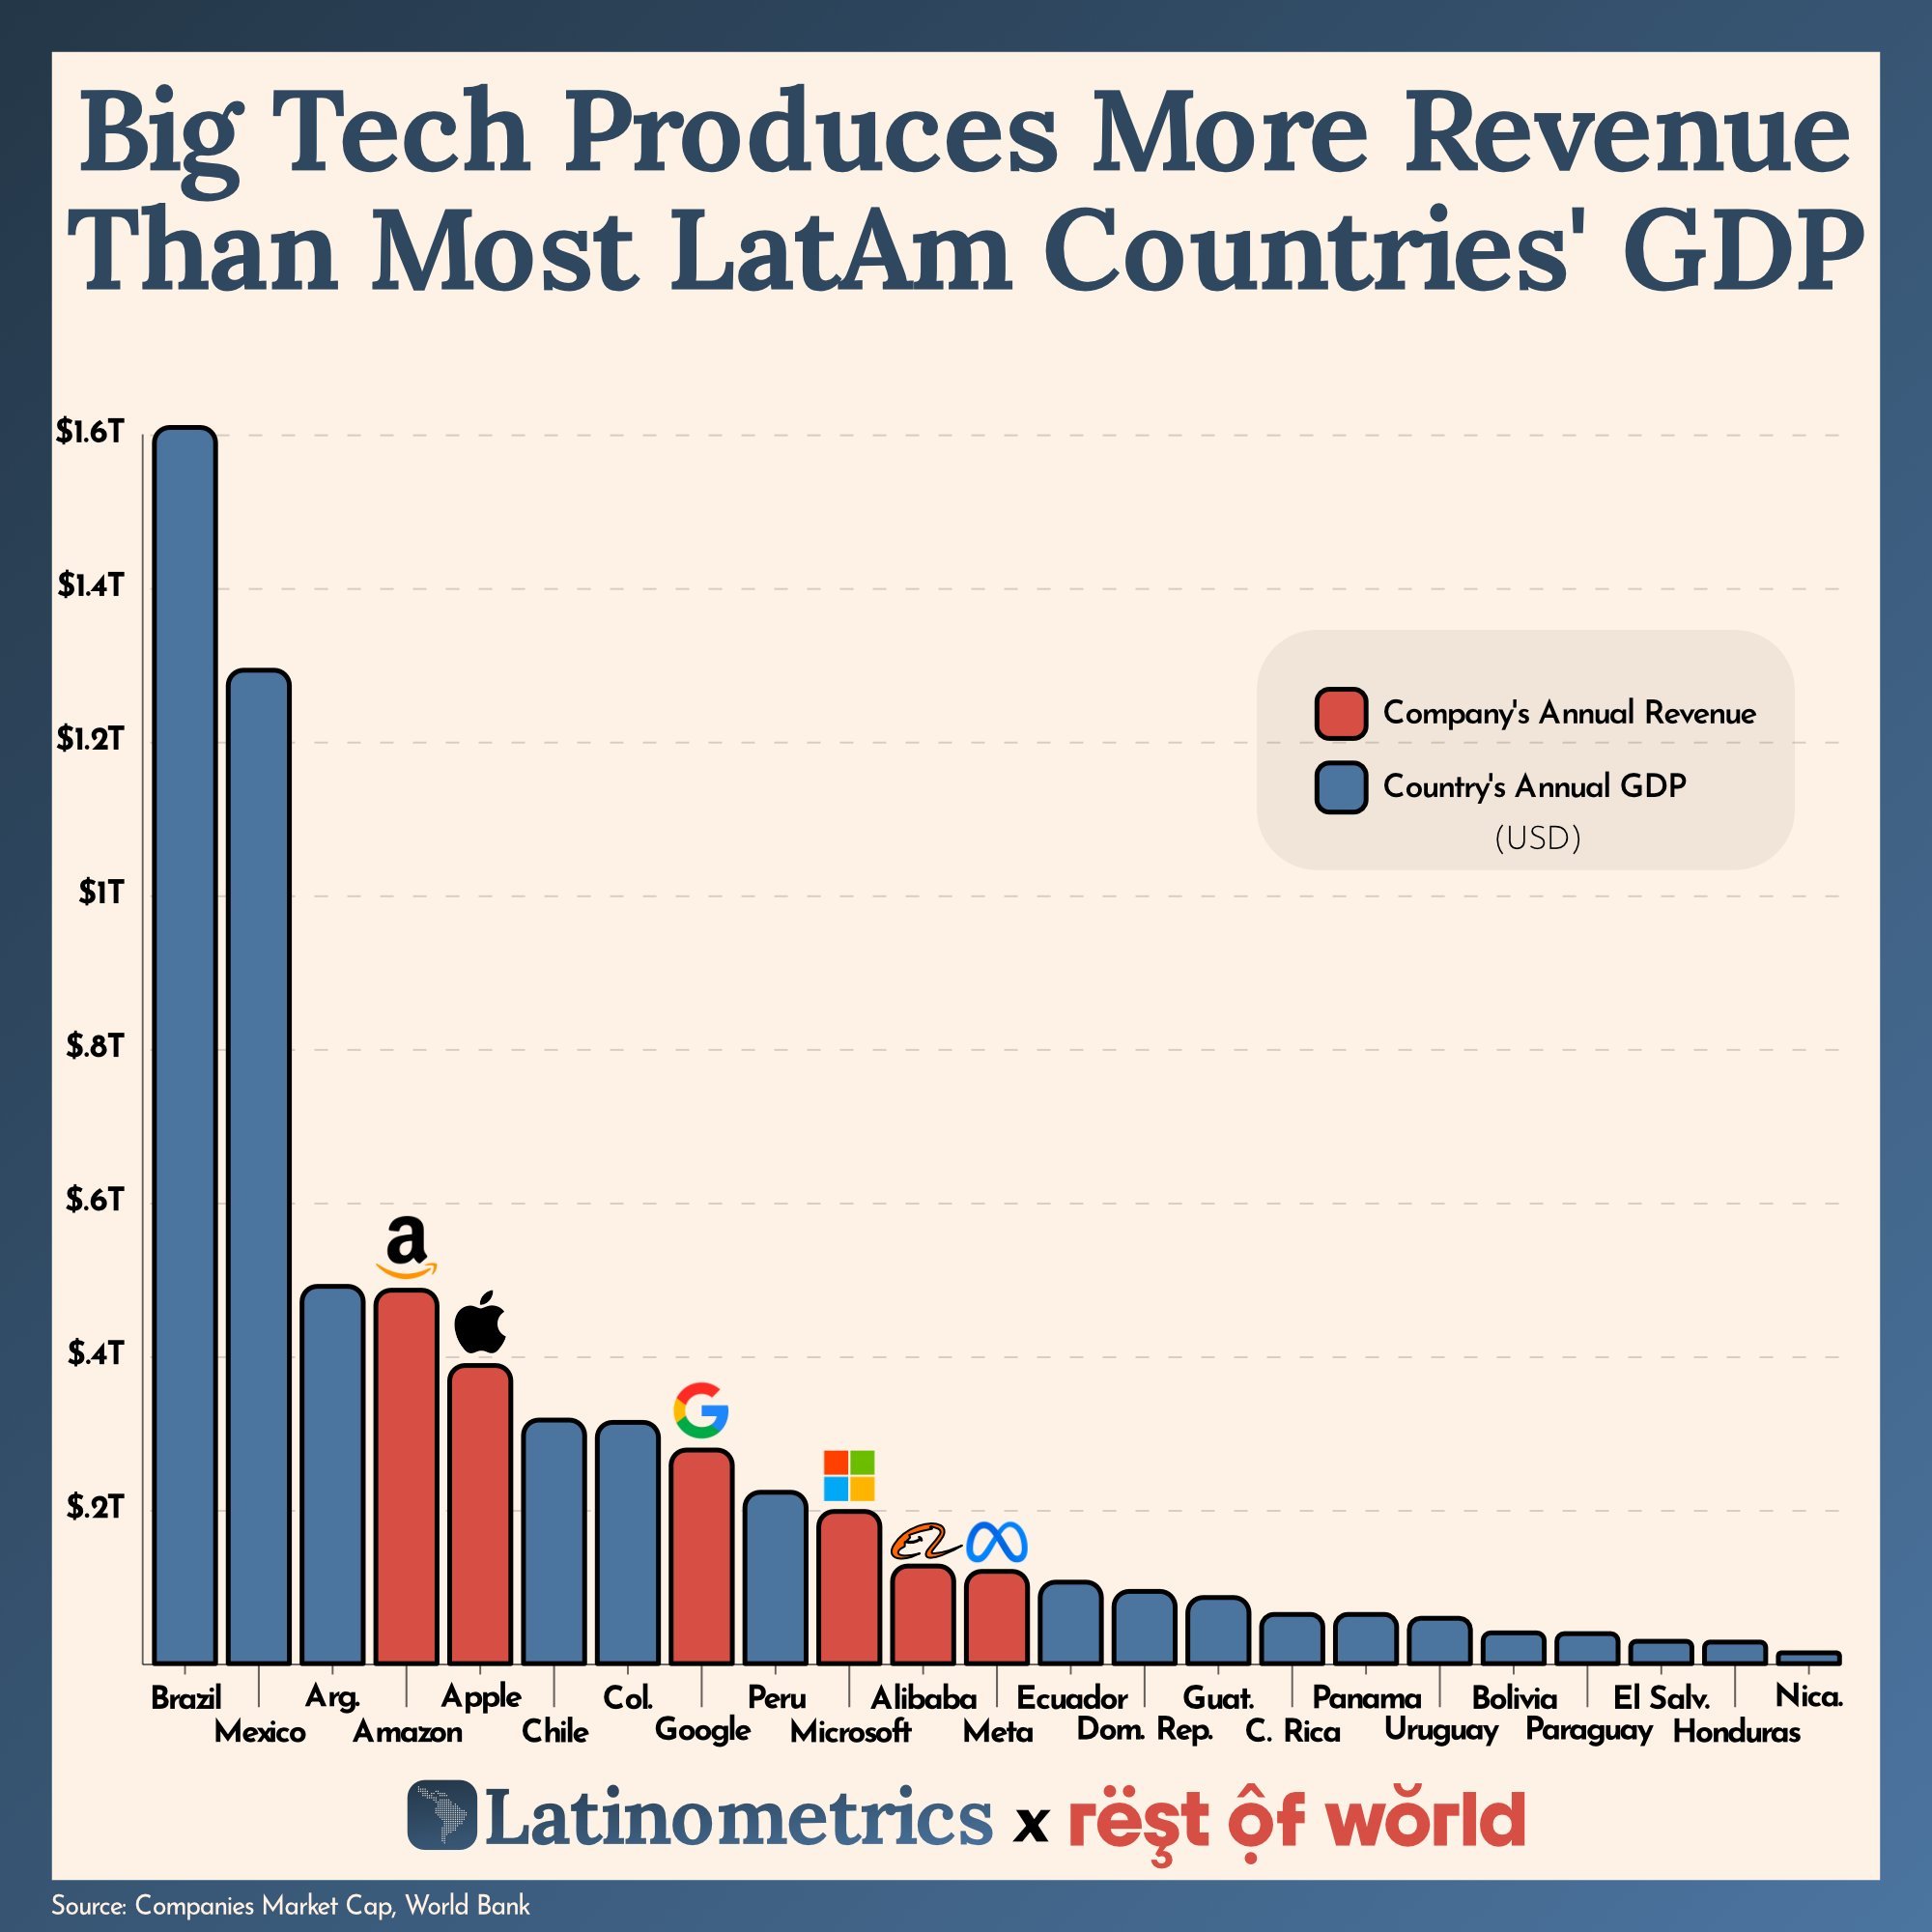 Las Big Tech pruducen más que muchos de los países de Latam | Por @LatamData